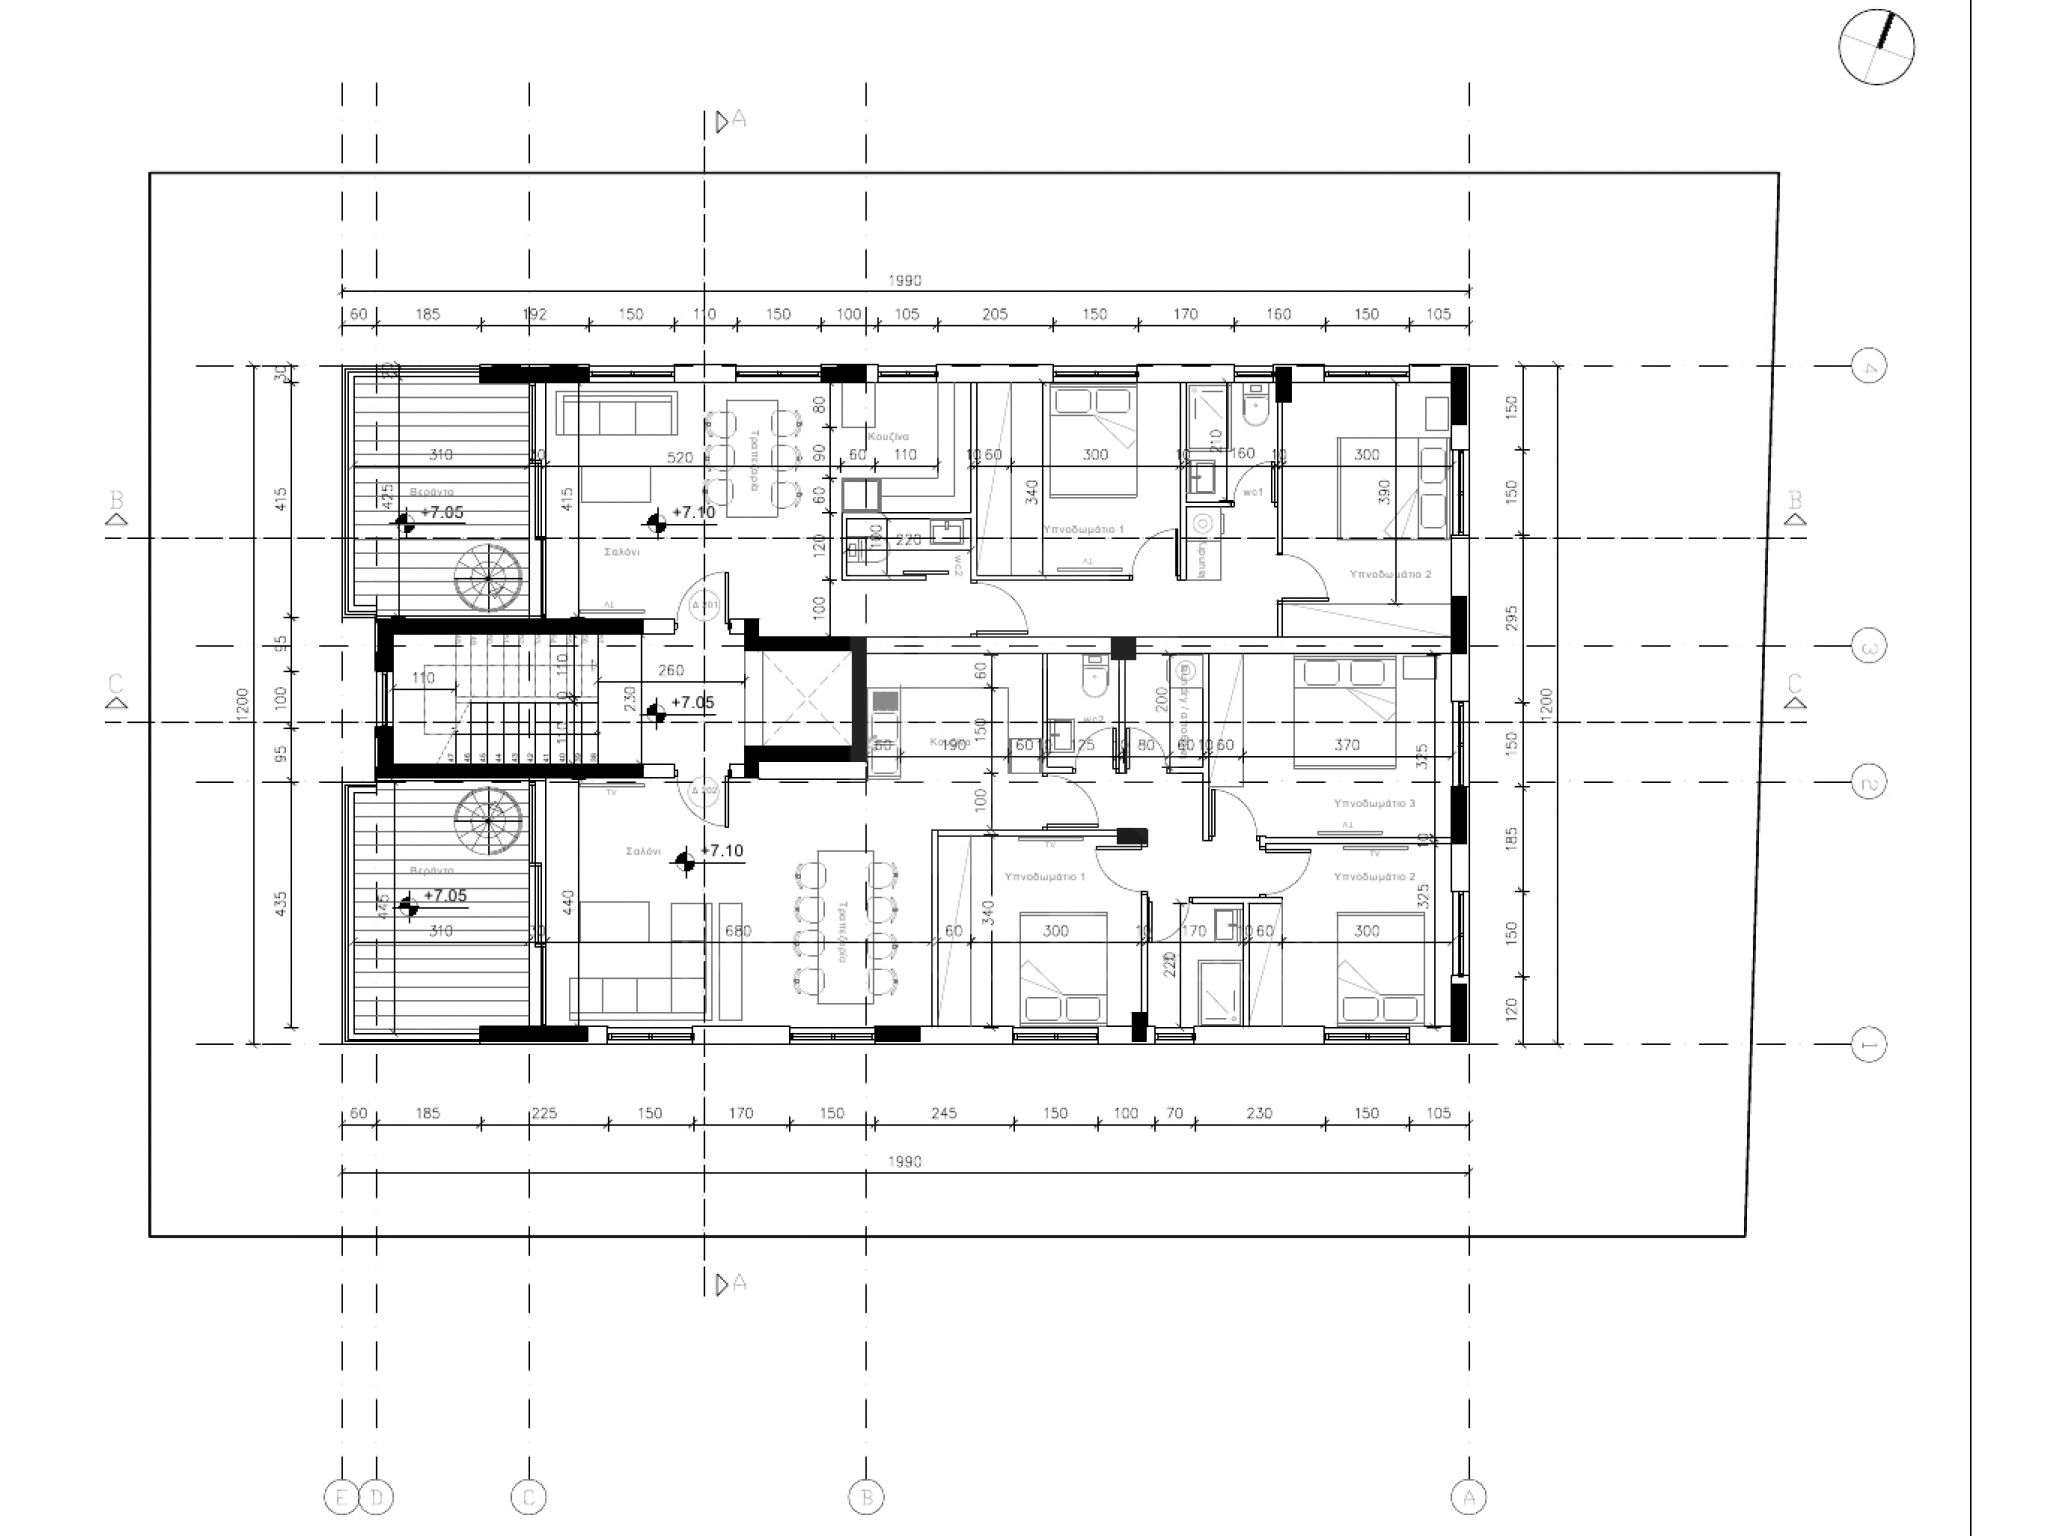 https://www.propertiescy.com/images/uploads/listings/large/16054-1613038396_2nd-floor-plan.jpg